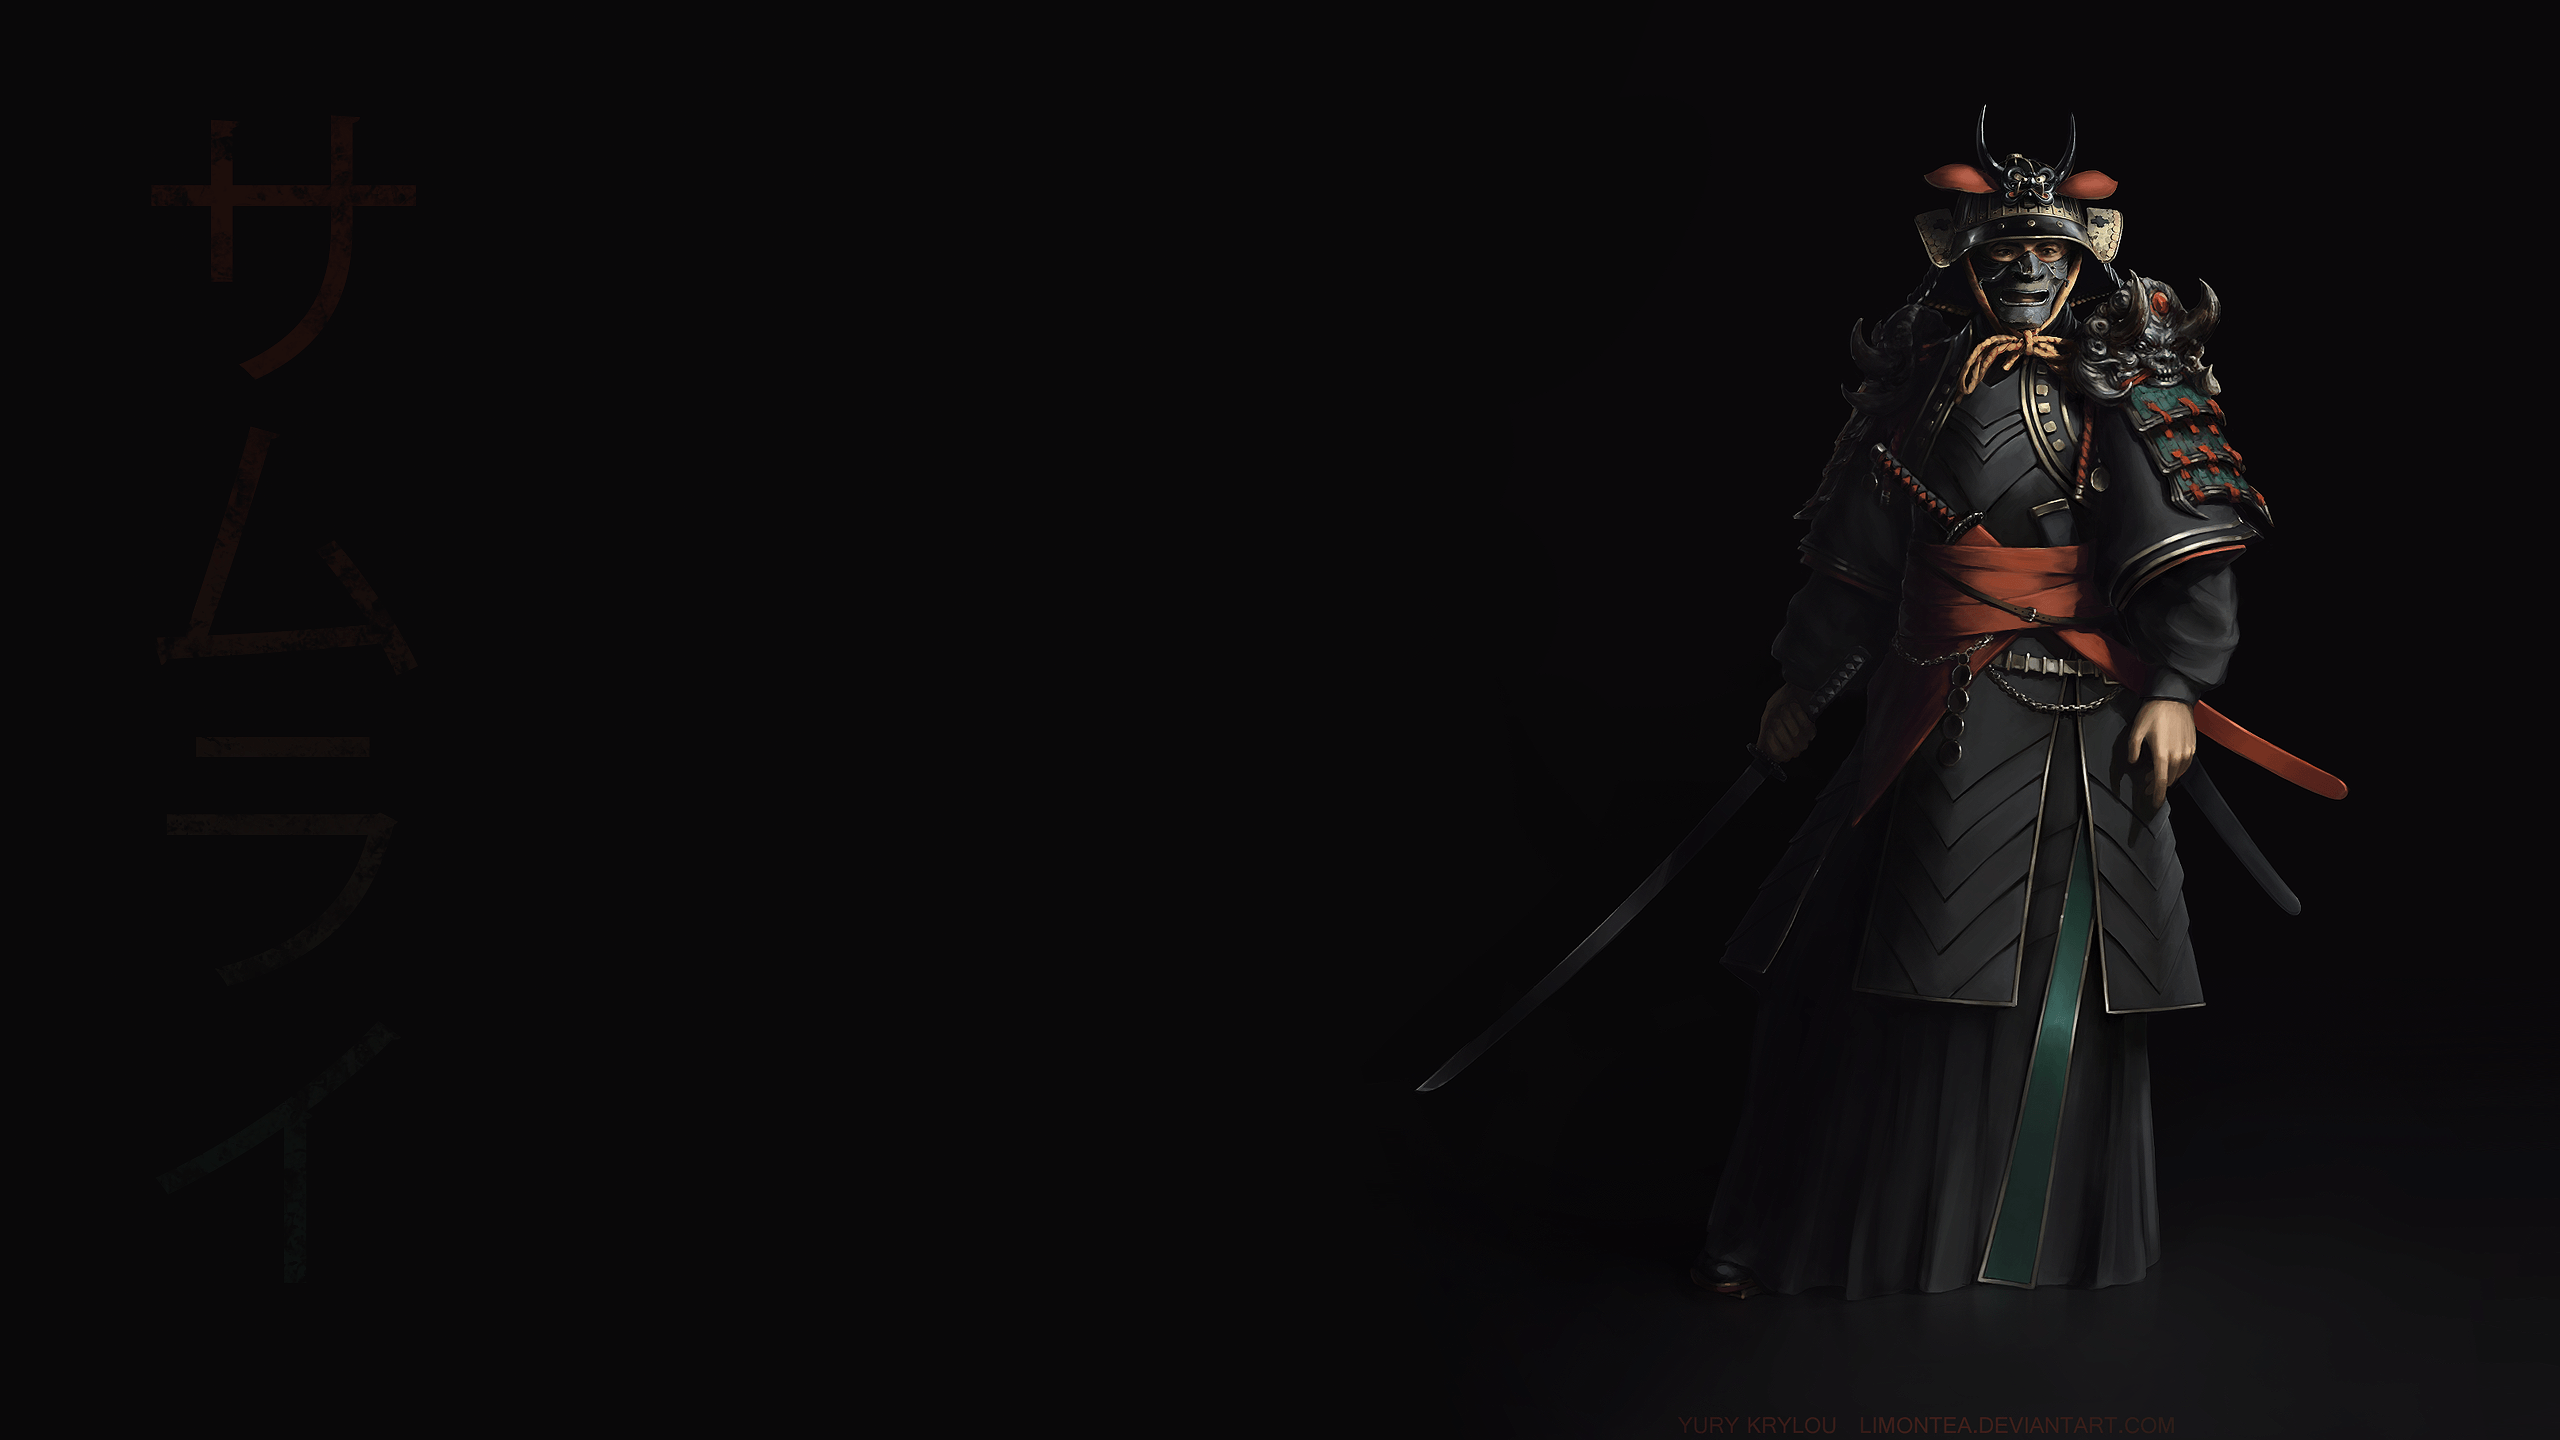 Dark Samurai Wallpapers